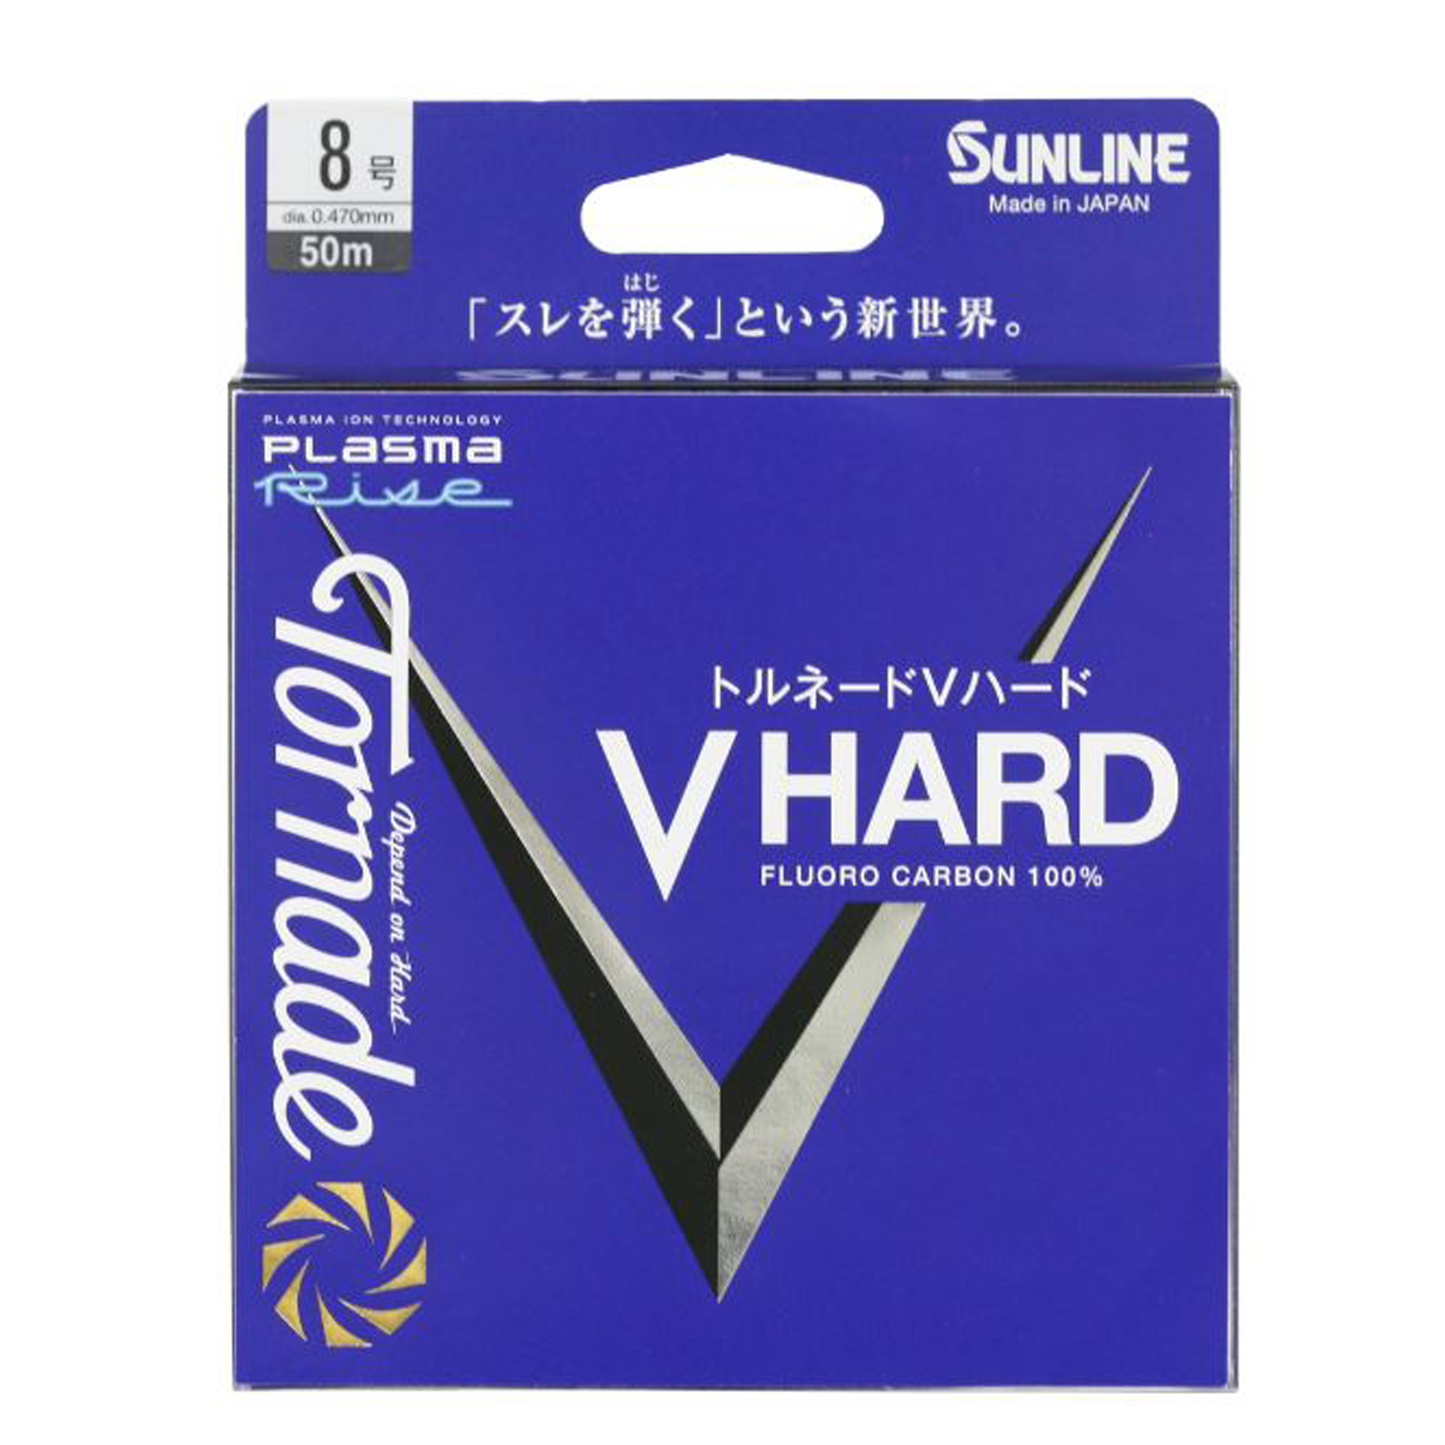 Sunline FC V-HARD PLASMA RISE Fluorocarbon mt. 50